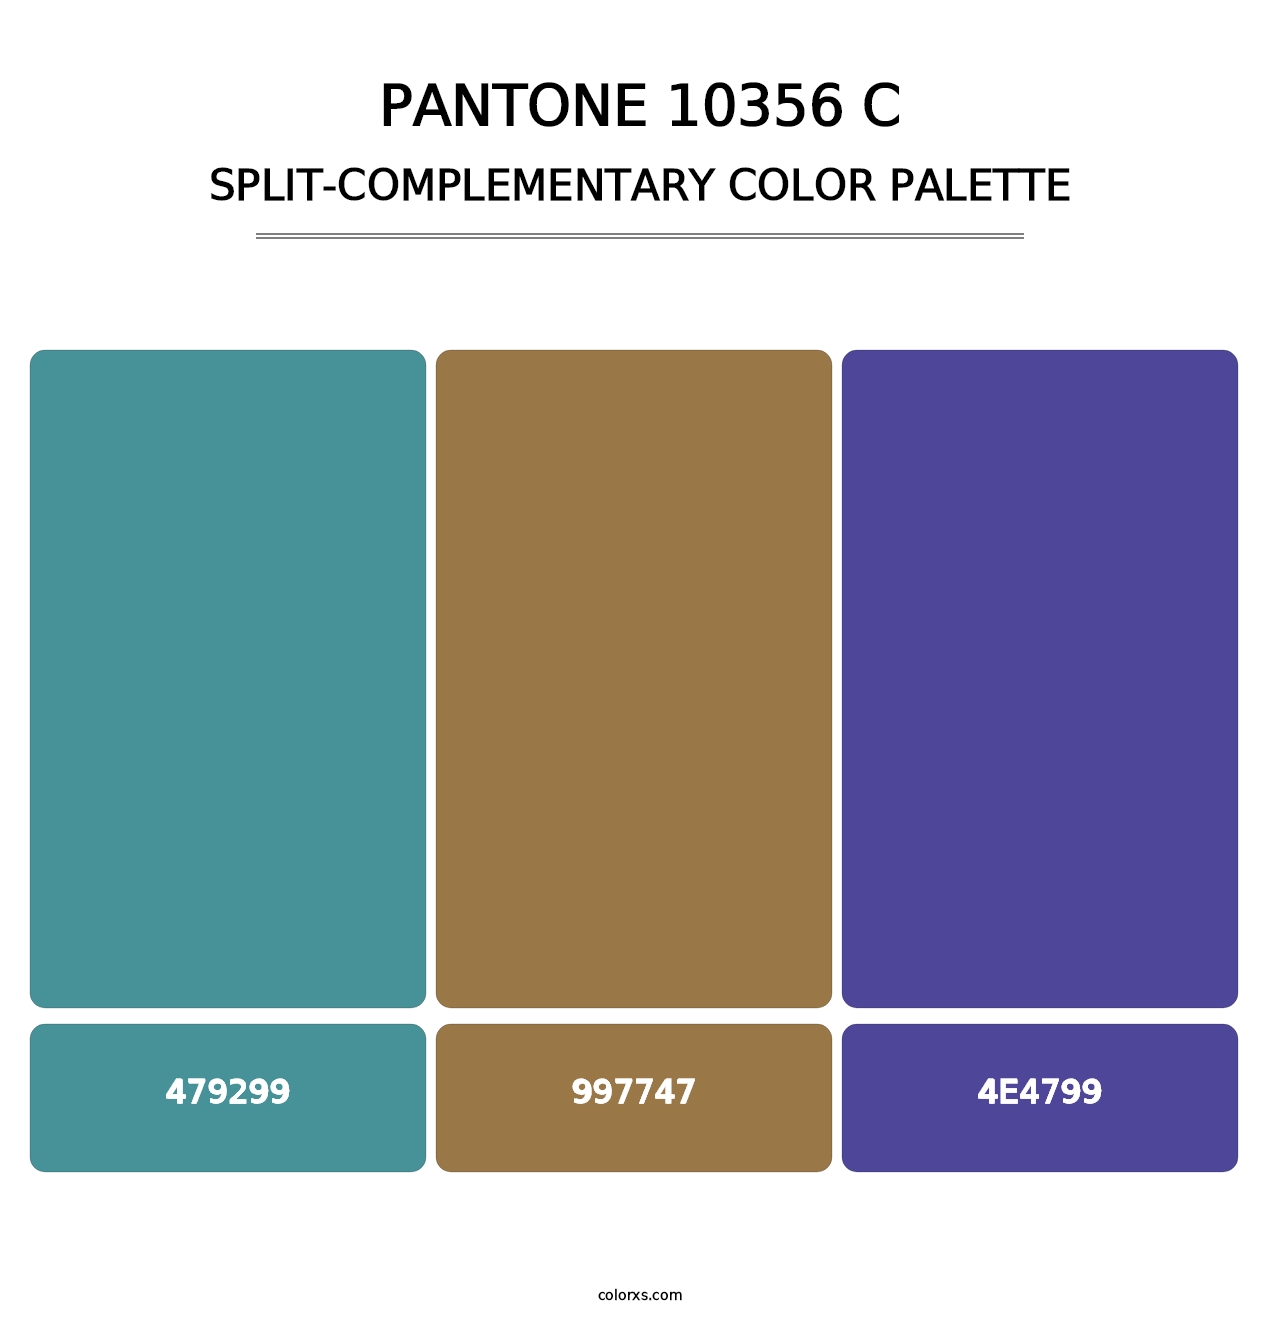 PANTONE 10356 C - Split-Complementary Color Palette